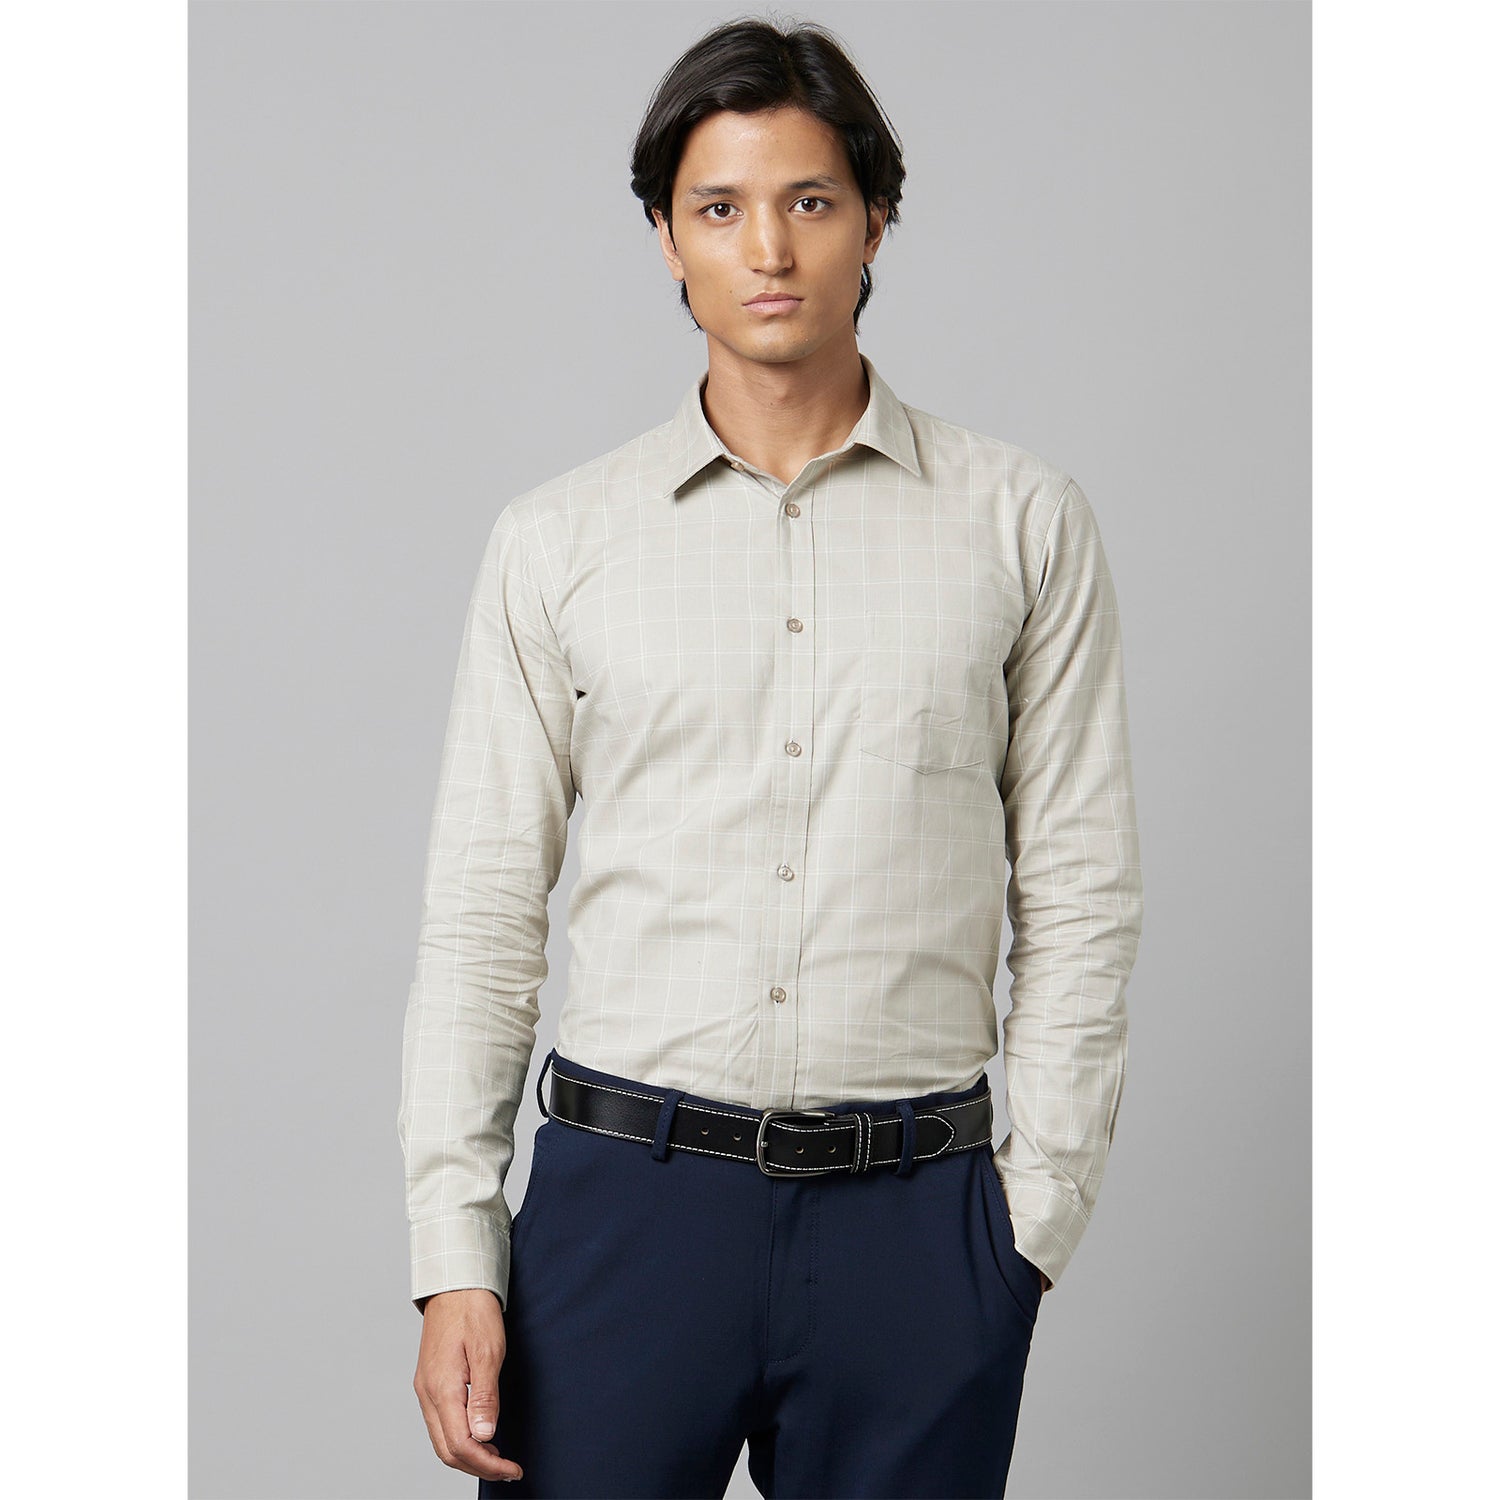 Beige Classic Formal Cotton Shirt (CAPRECHK2)